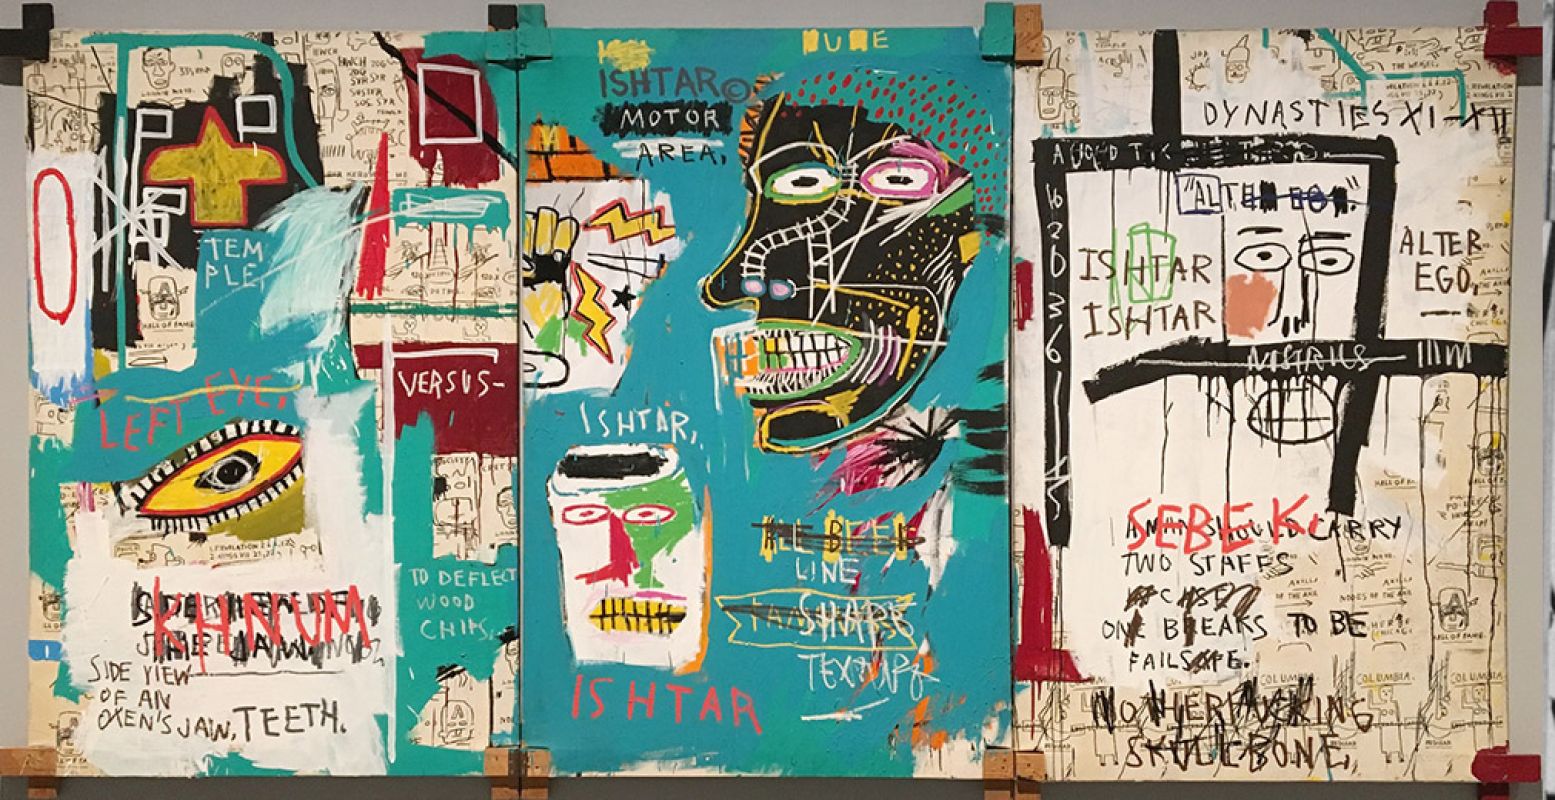 Het werk Ishtar (1983) van Jean Michel Basquiat. Foto: Eigendom van de Akense Ludwig Forum für Internationale Kunst